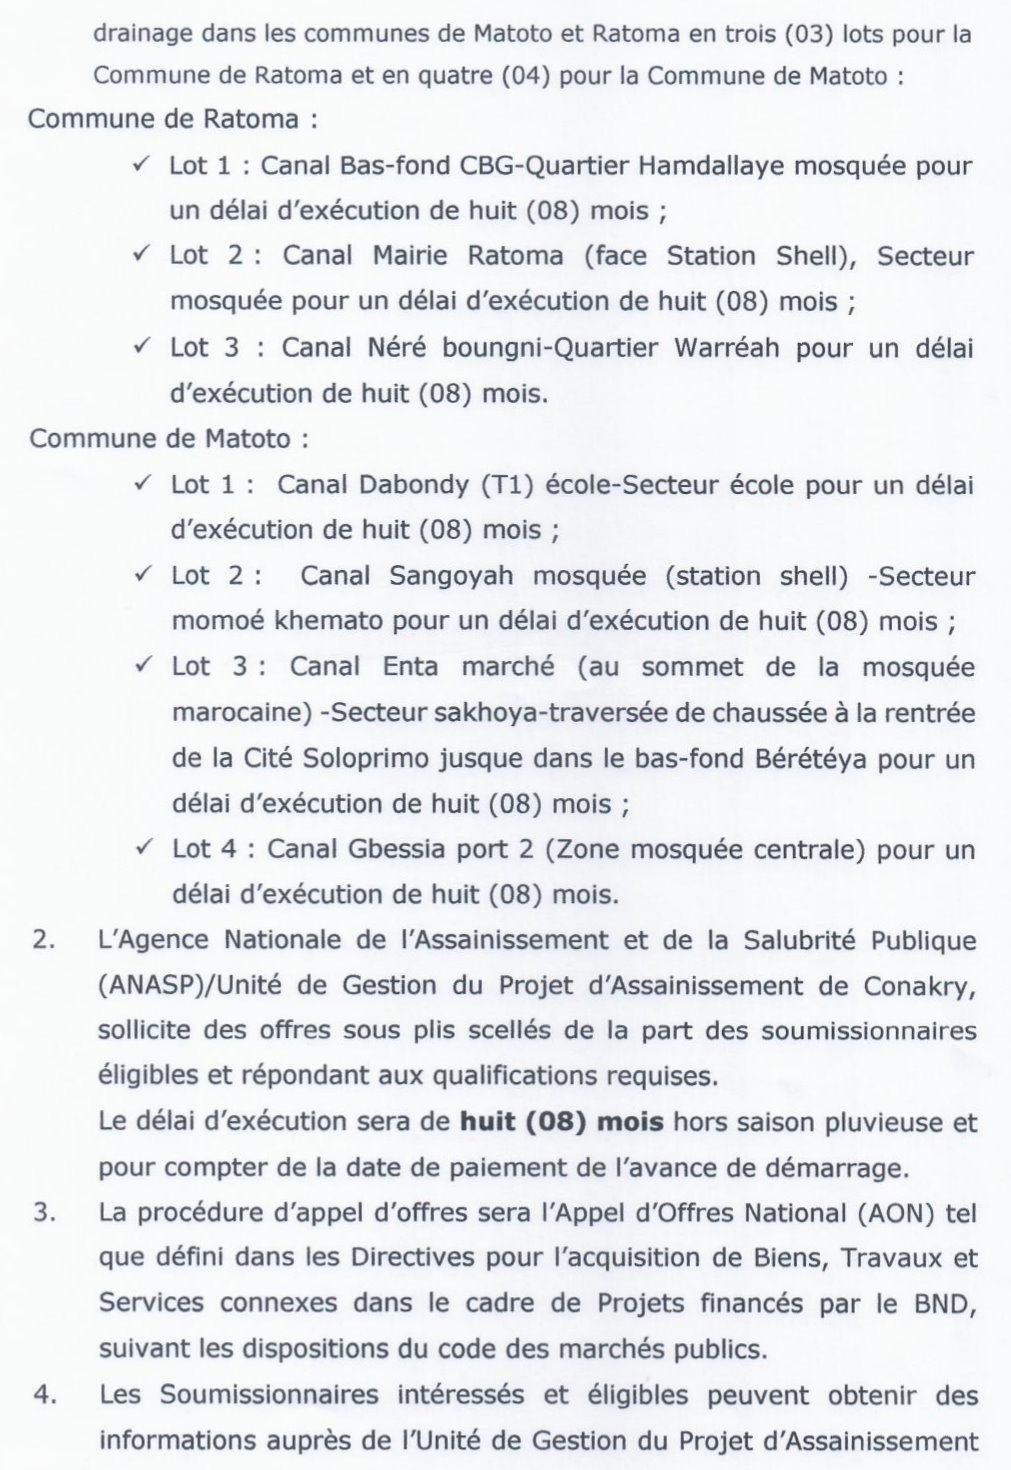 Maintenance Des Canaux De Drainage Dans Les Communes De Matoto et Ratoma | Page 2